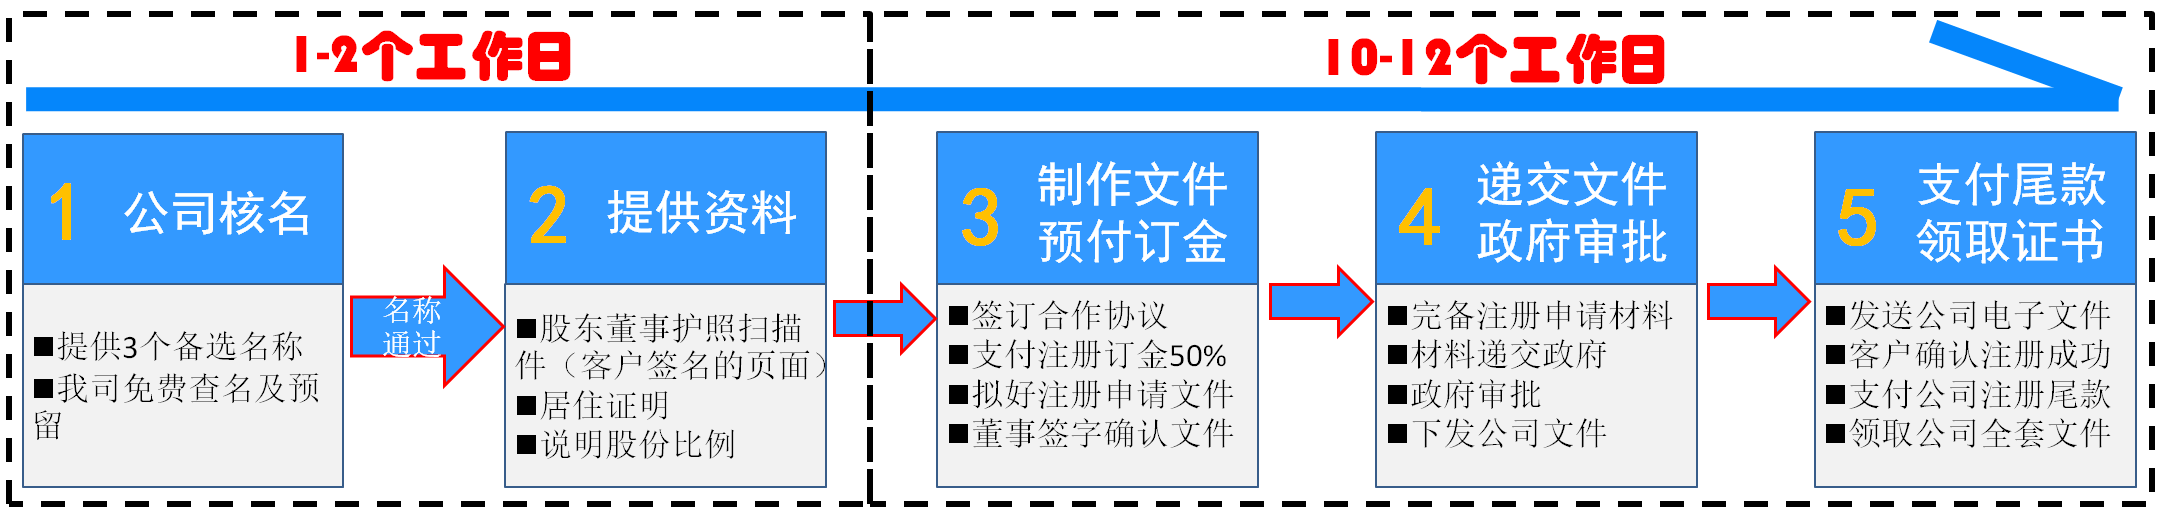 上海注册香港公司流程步骤